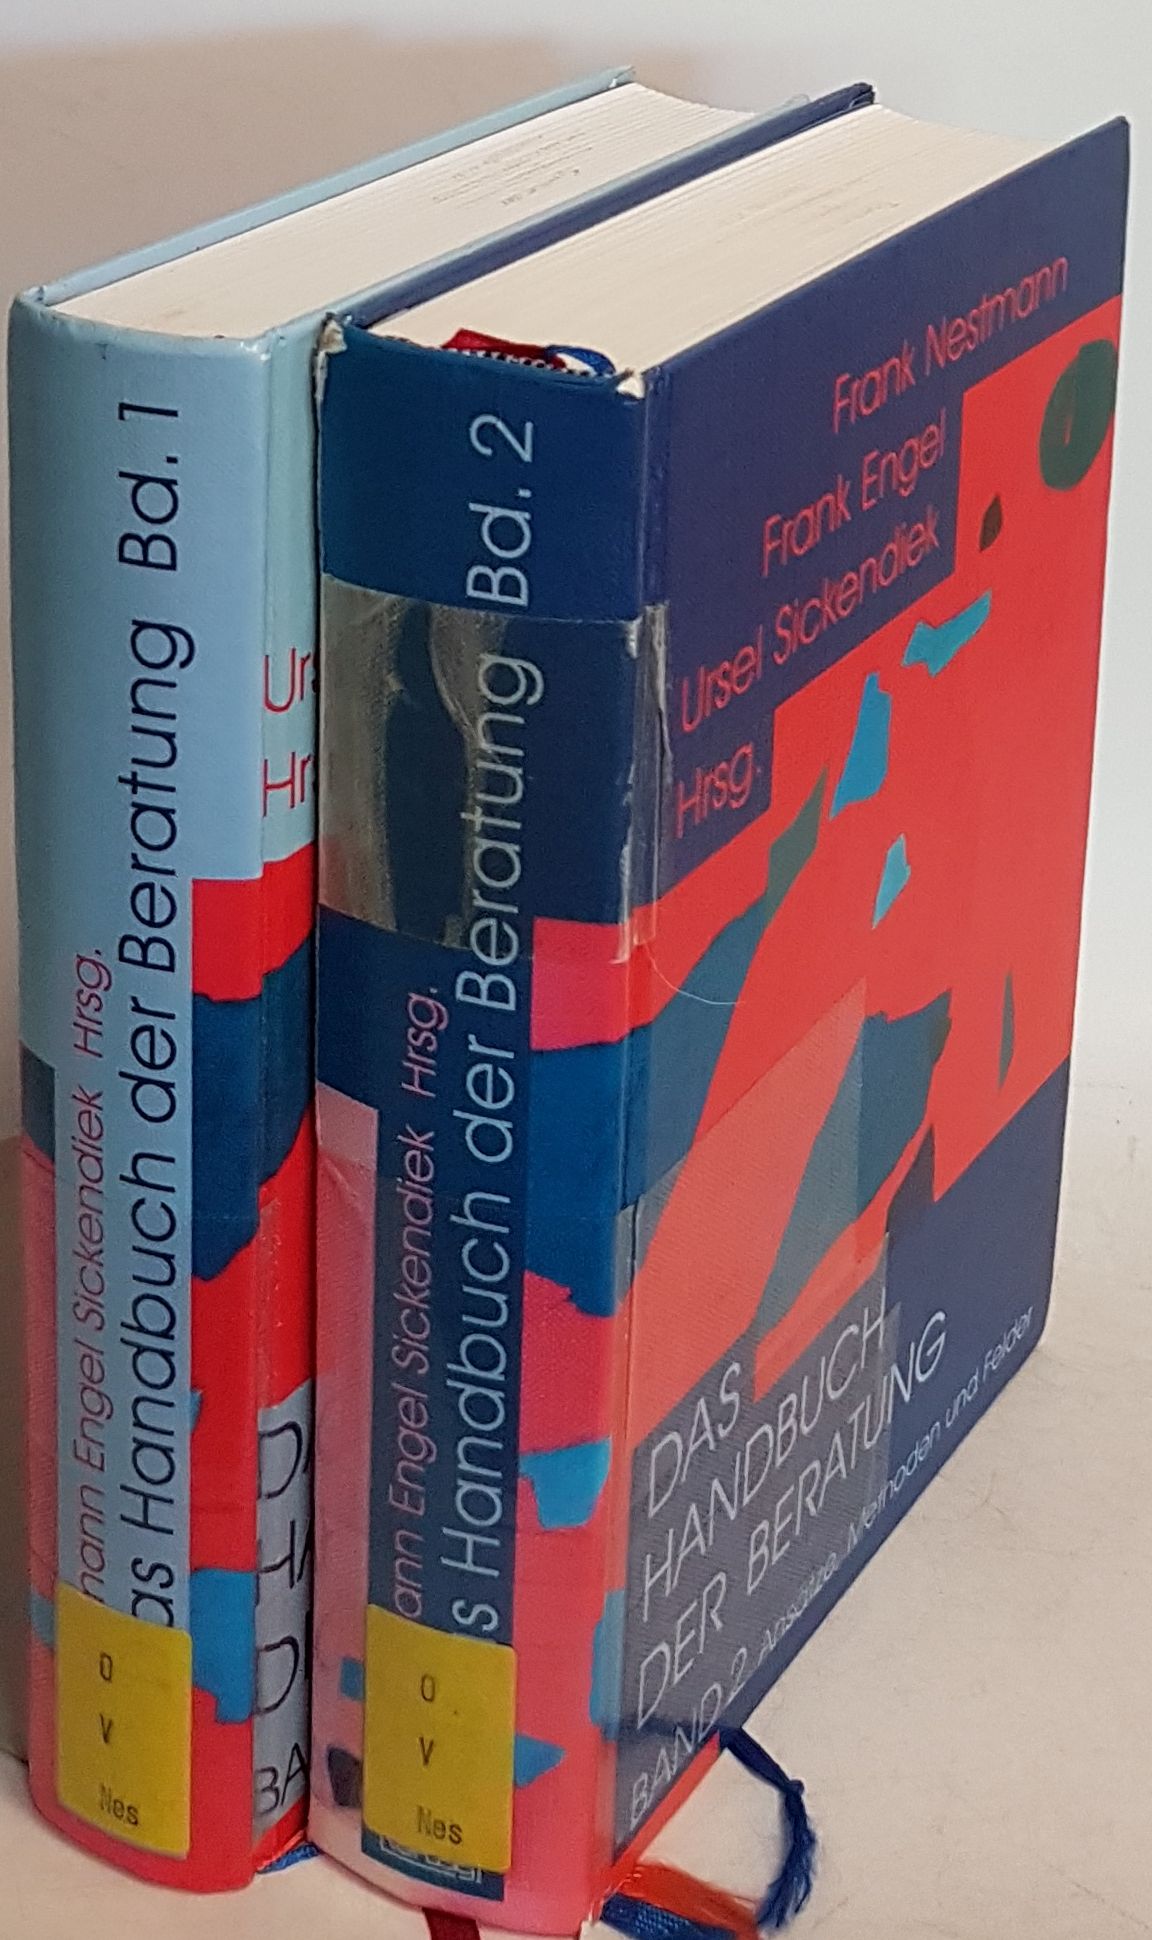 Das Handbuch der Beratung (2 Bände KOMPLETT) - Bd.1: Disziplinen und Zugänge/ Bd.2: Ansätze und Methoden. - Frank, Engel, Sickendiek Ursel und Nestmann Frank